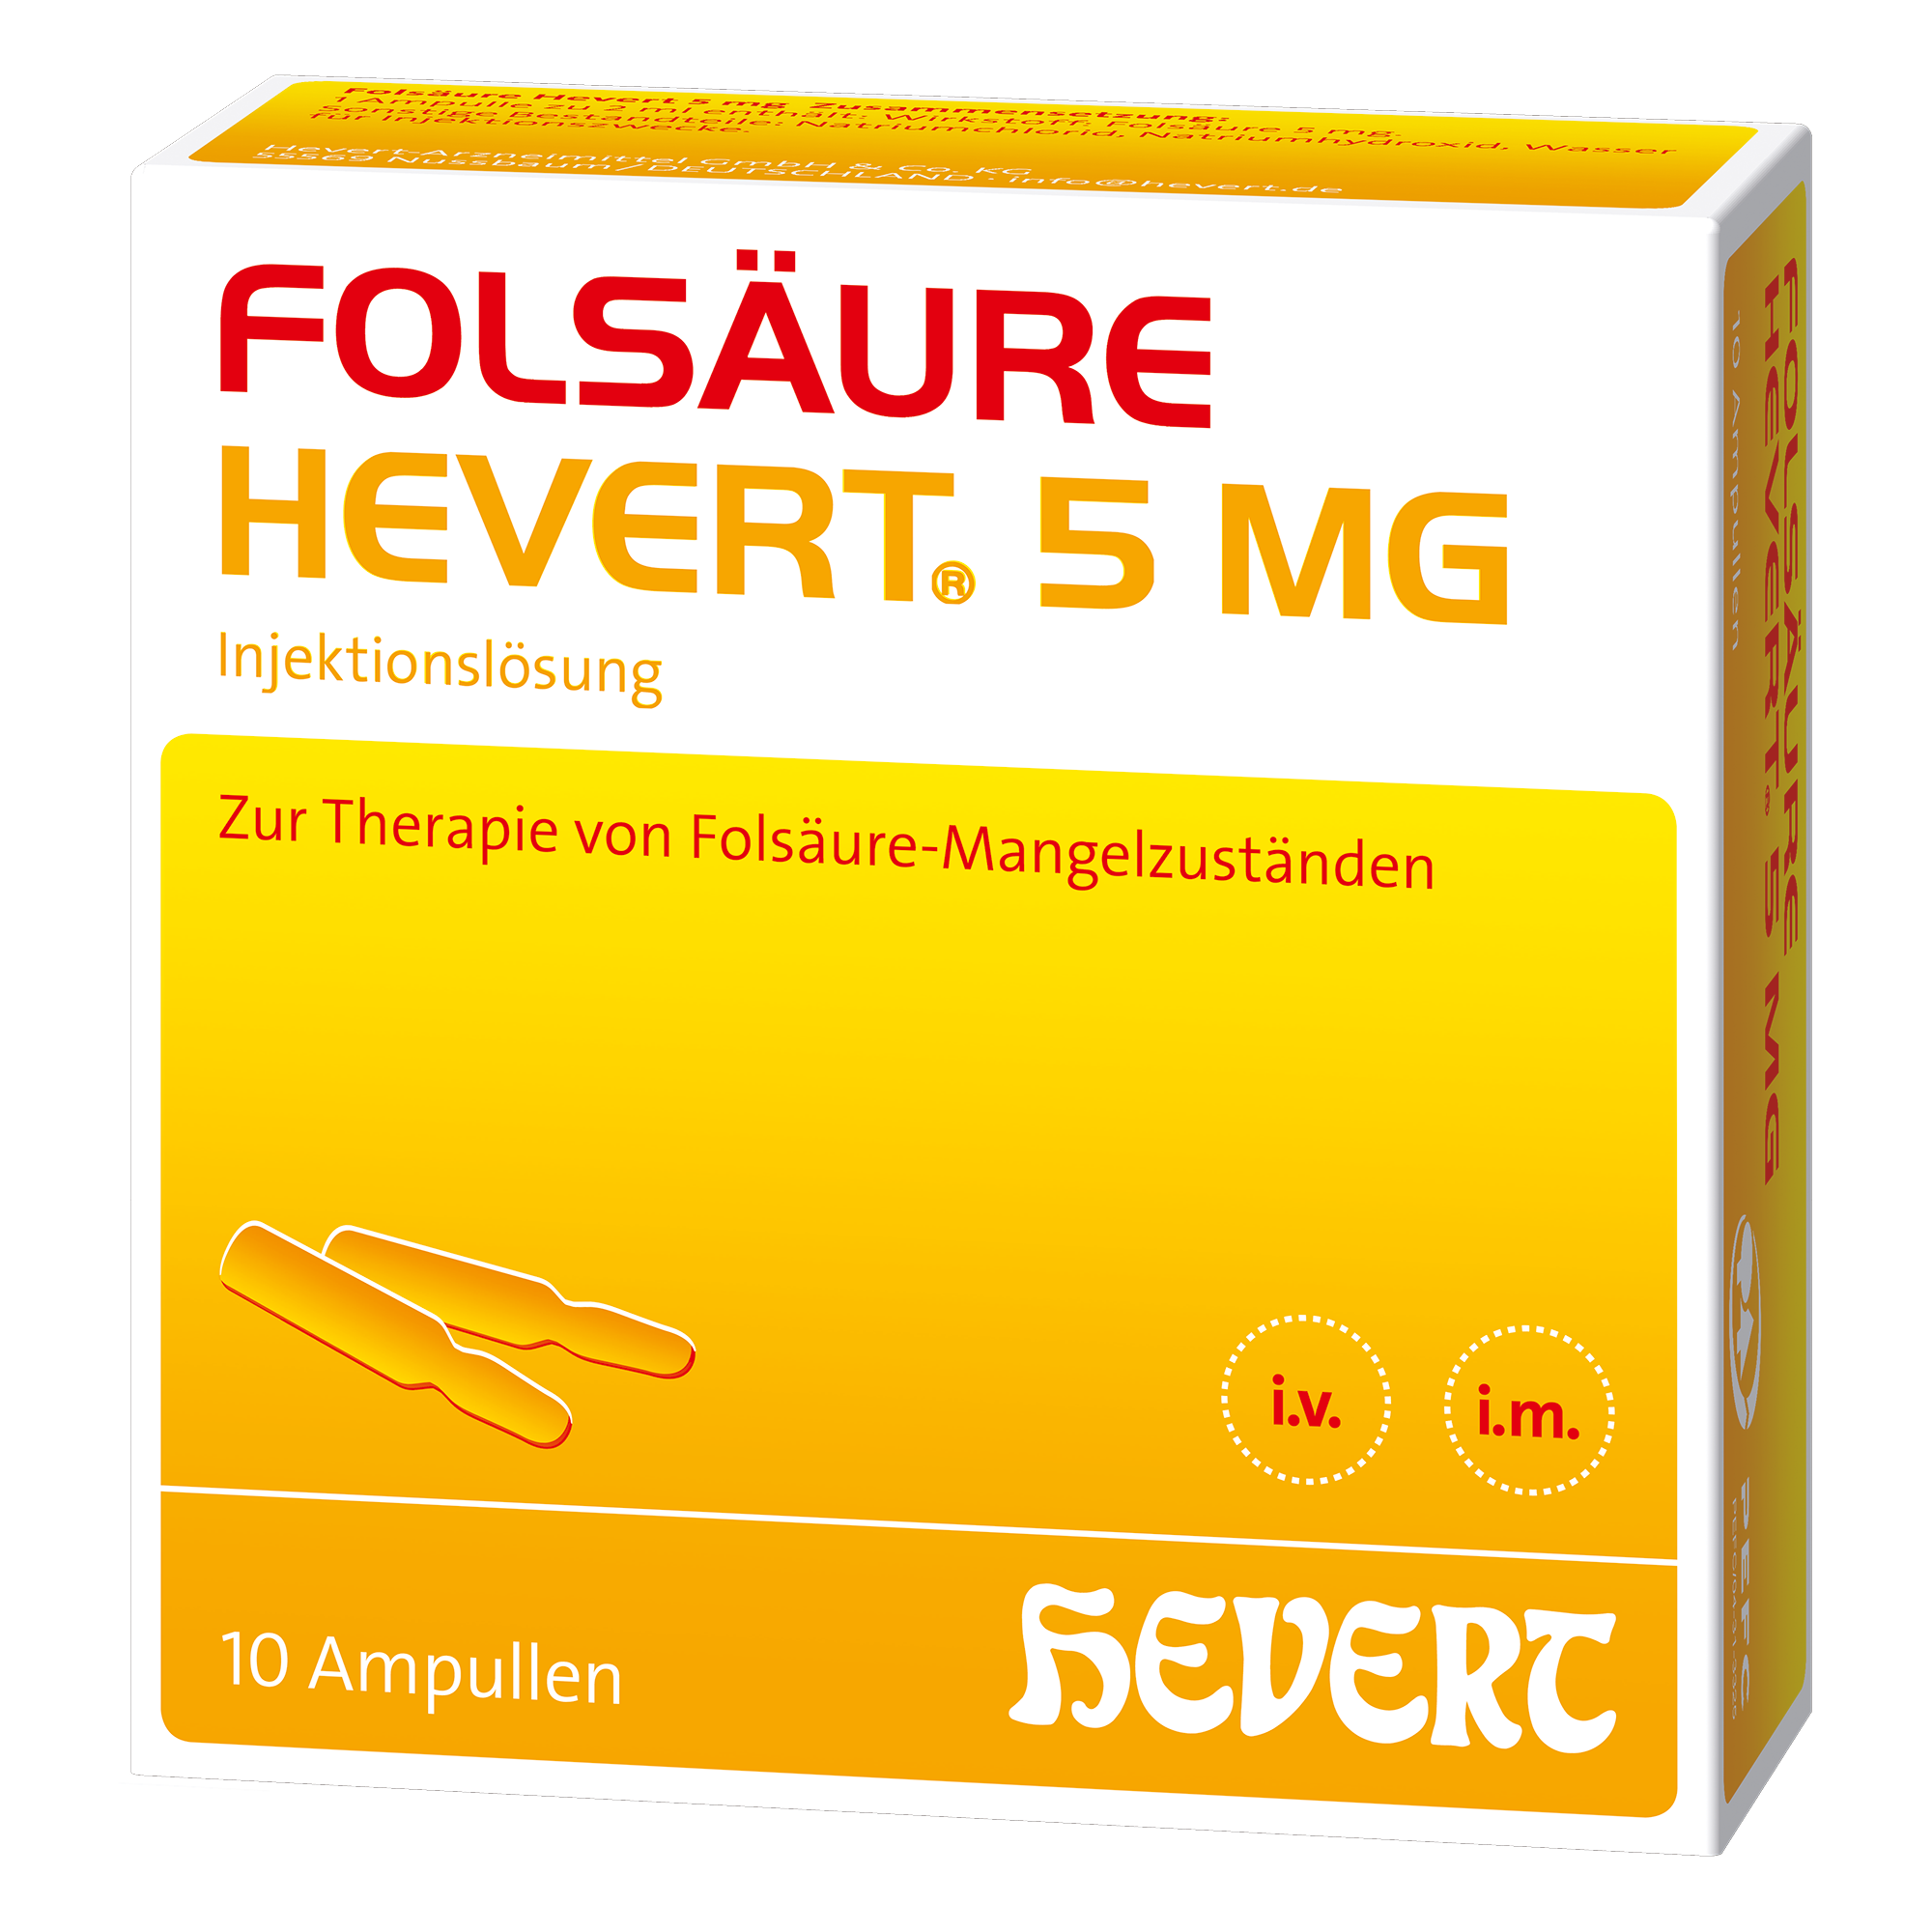 Folsäure Hevert 5 mg